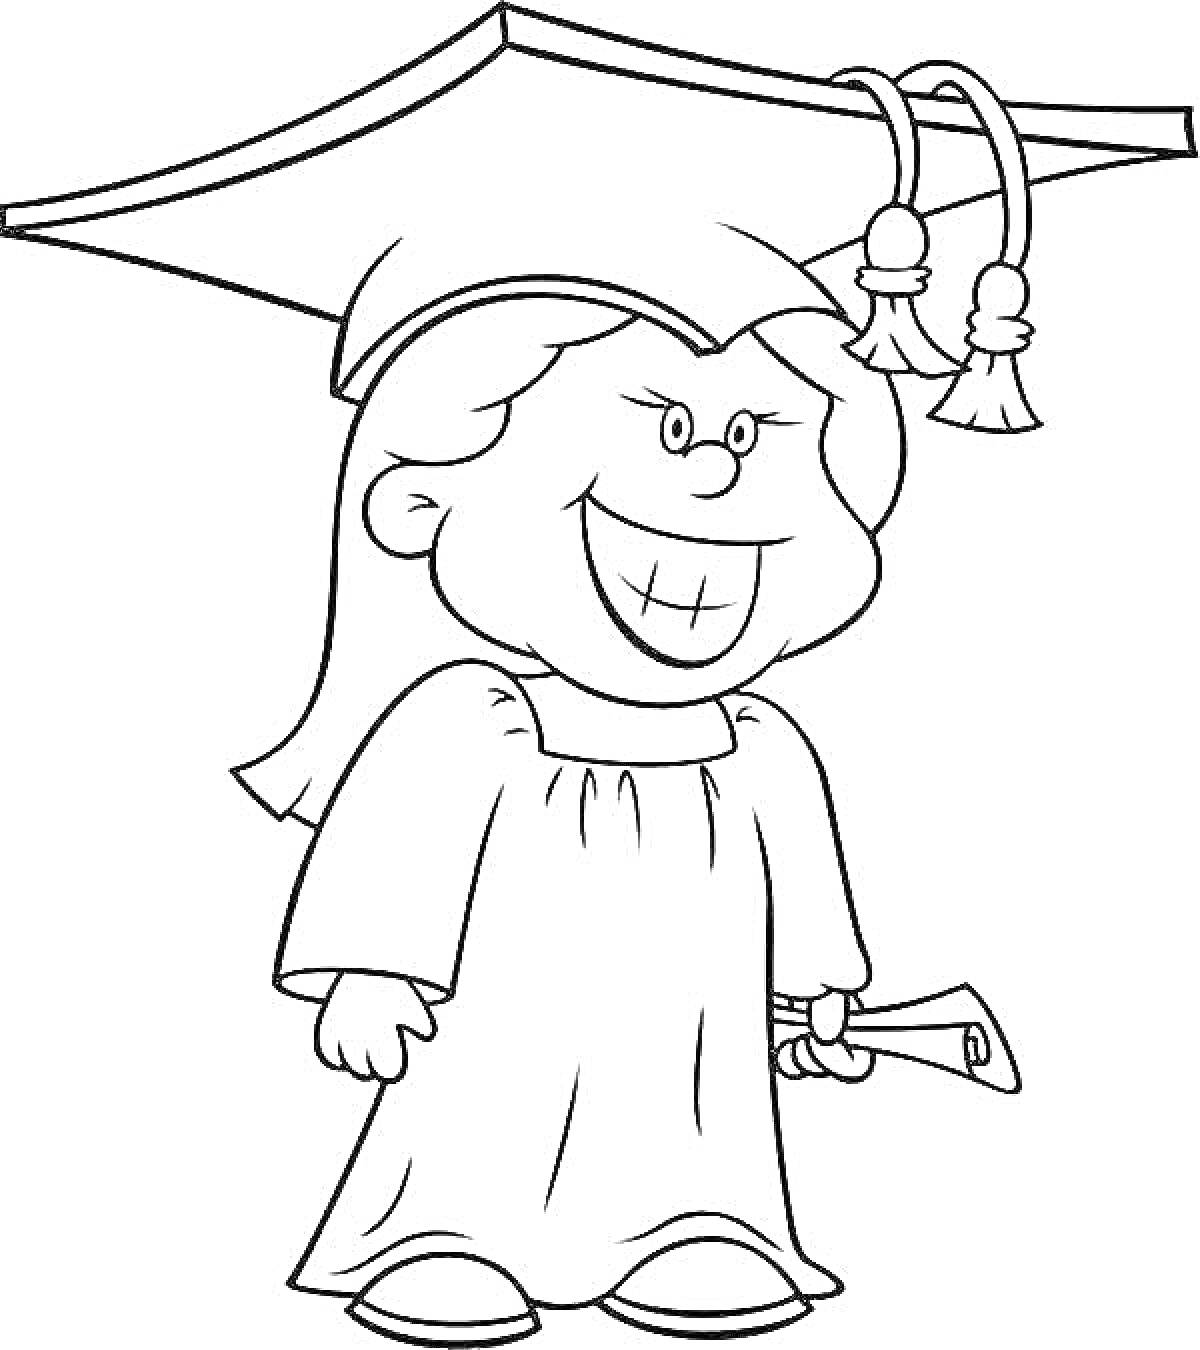 Студентка в академической шапочке с дипломом в руке